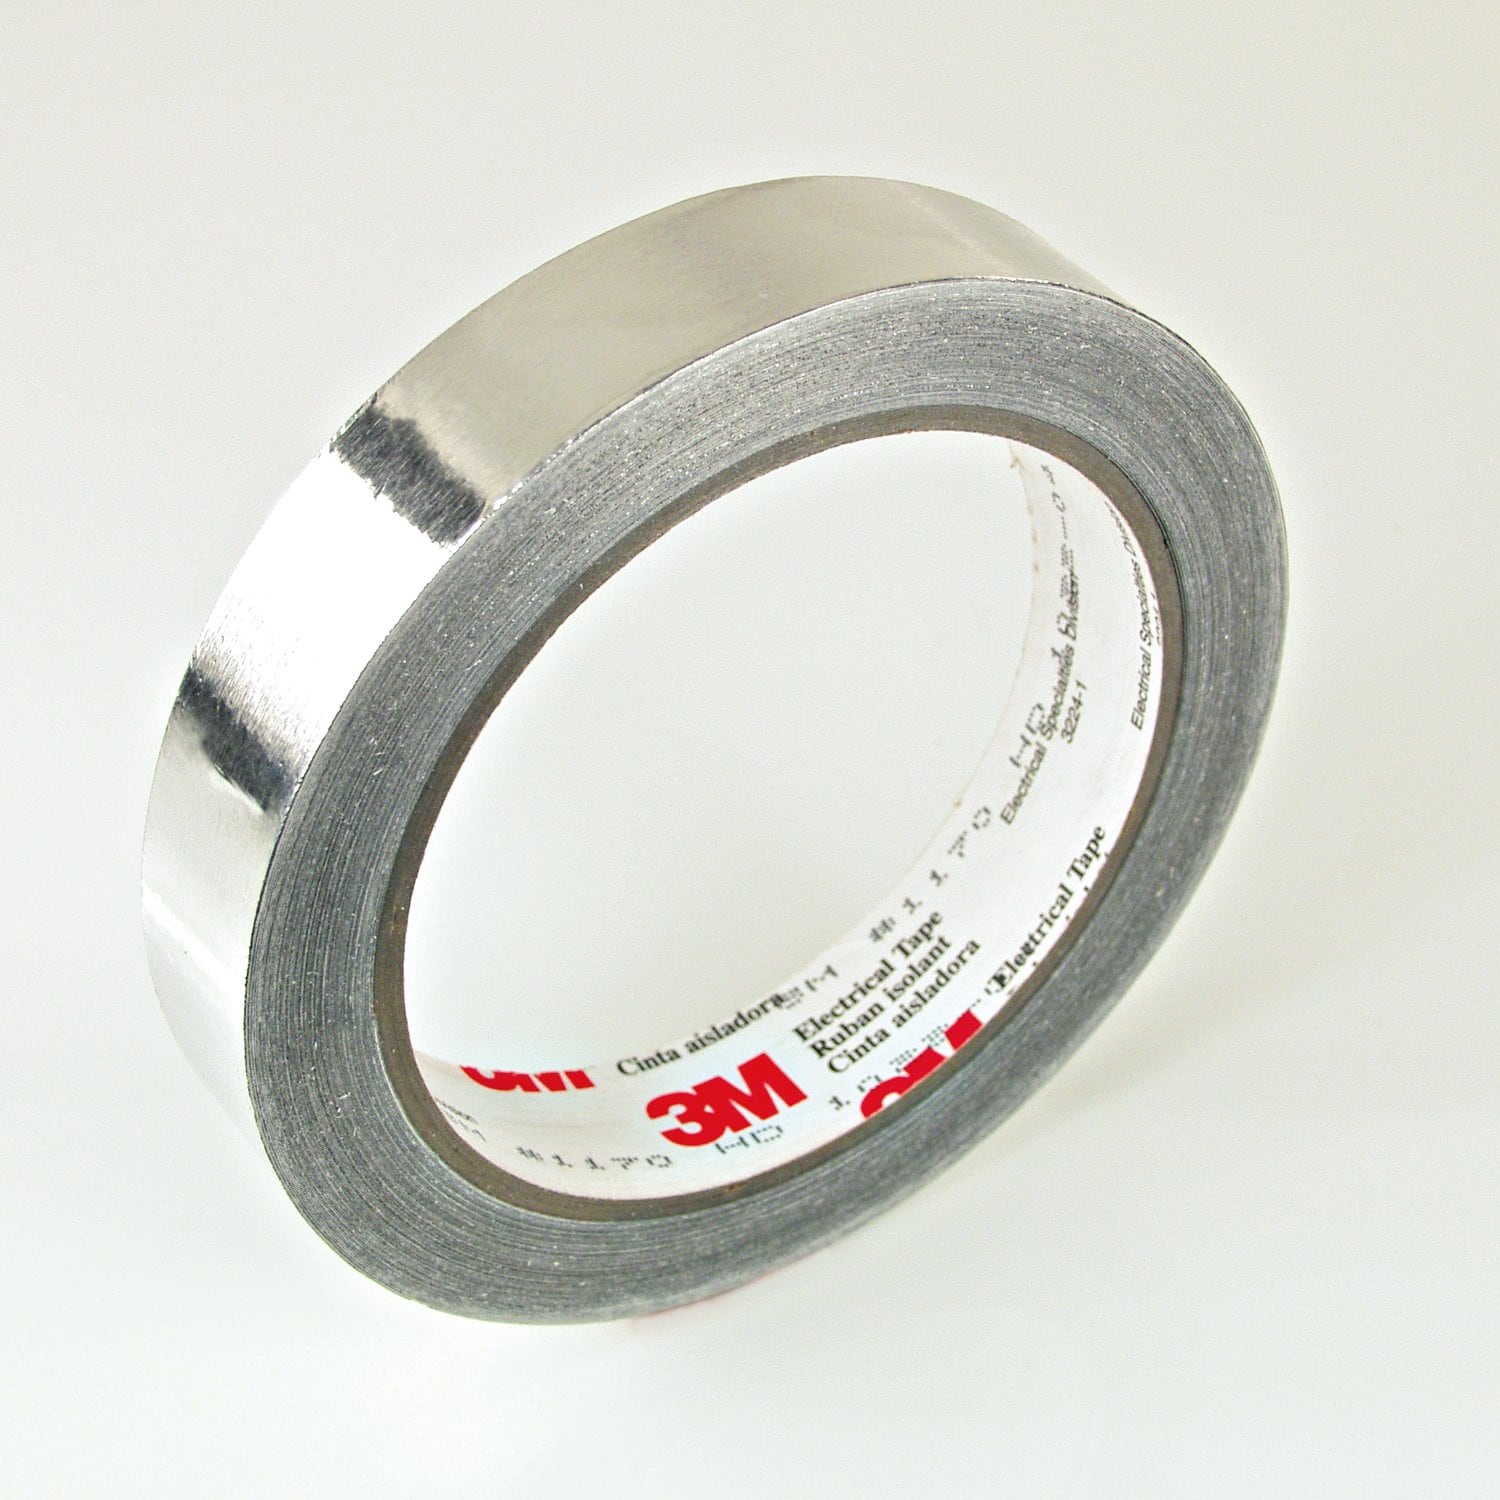 7100033111 - 3M EMI Aluminum Foil Shielding Tape 1170, 25 mm x 16.5 m, 3 in Paper
Core, 9 Rolls/Case